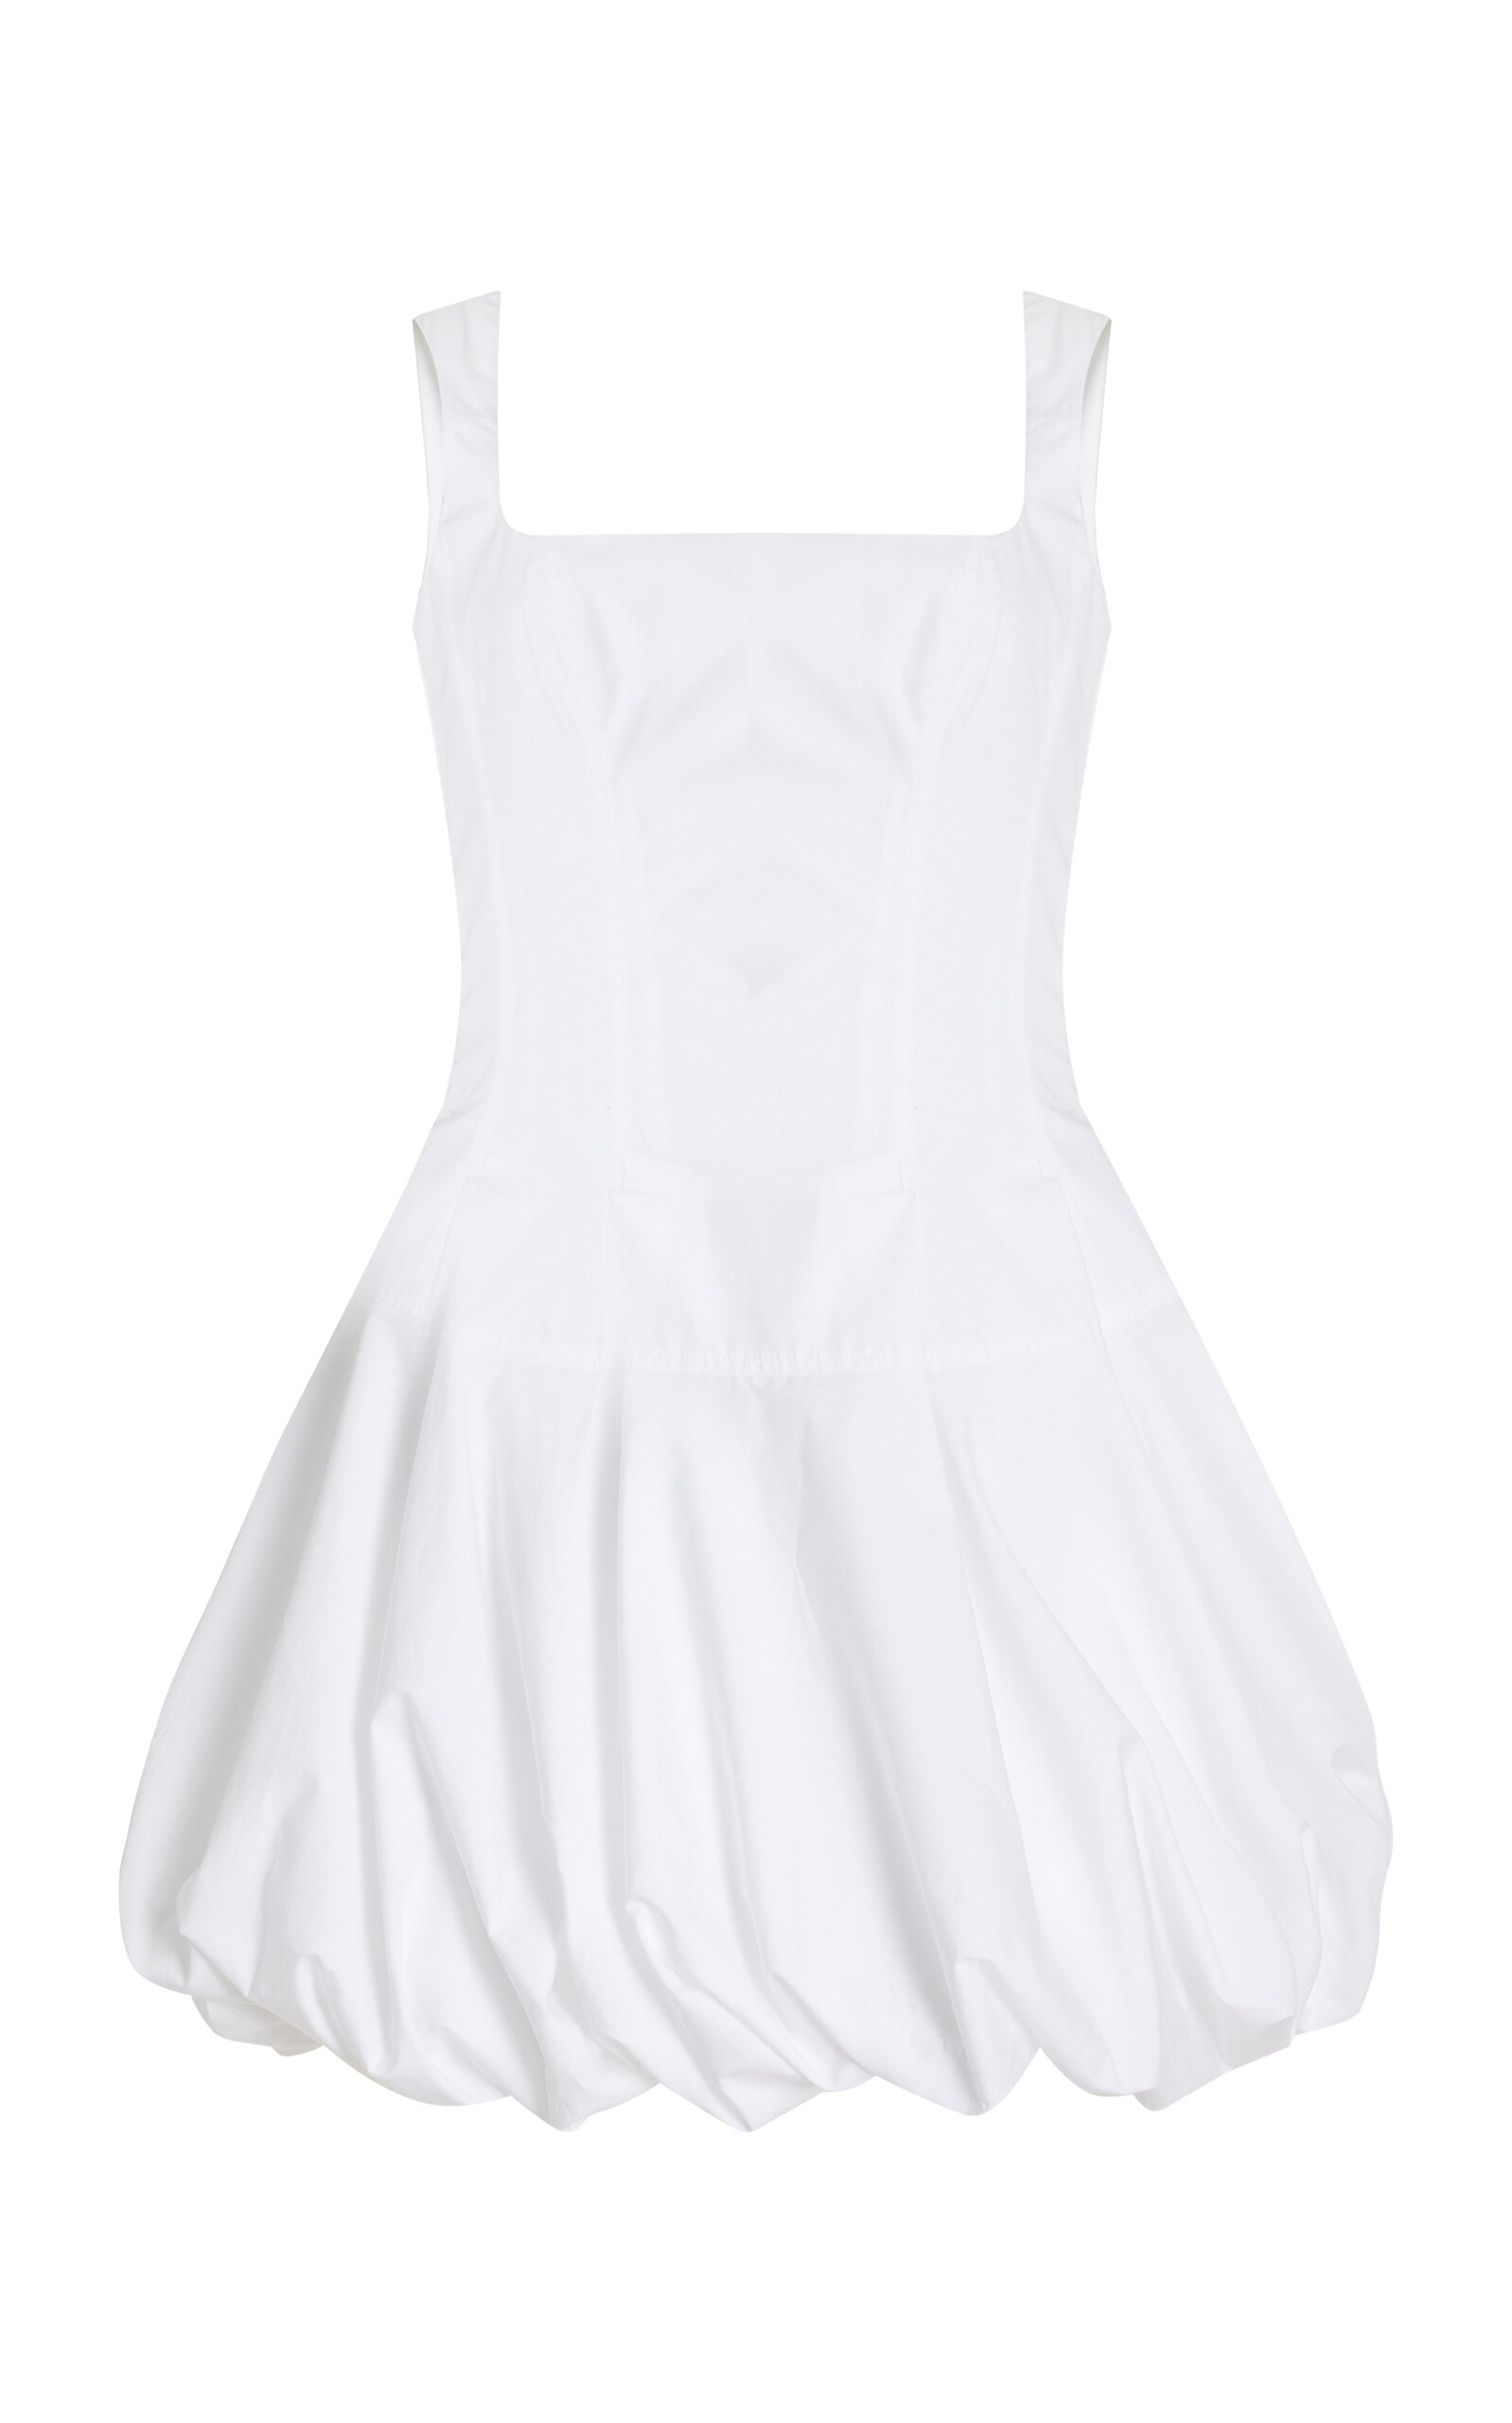 Simkhai Juni Bubble-hem Cotton-blend Corset Mini Dress In White